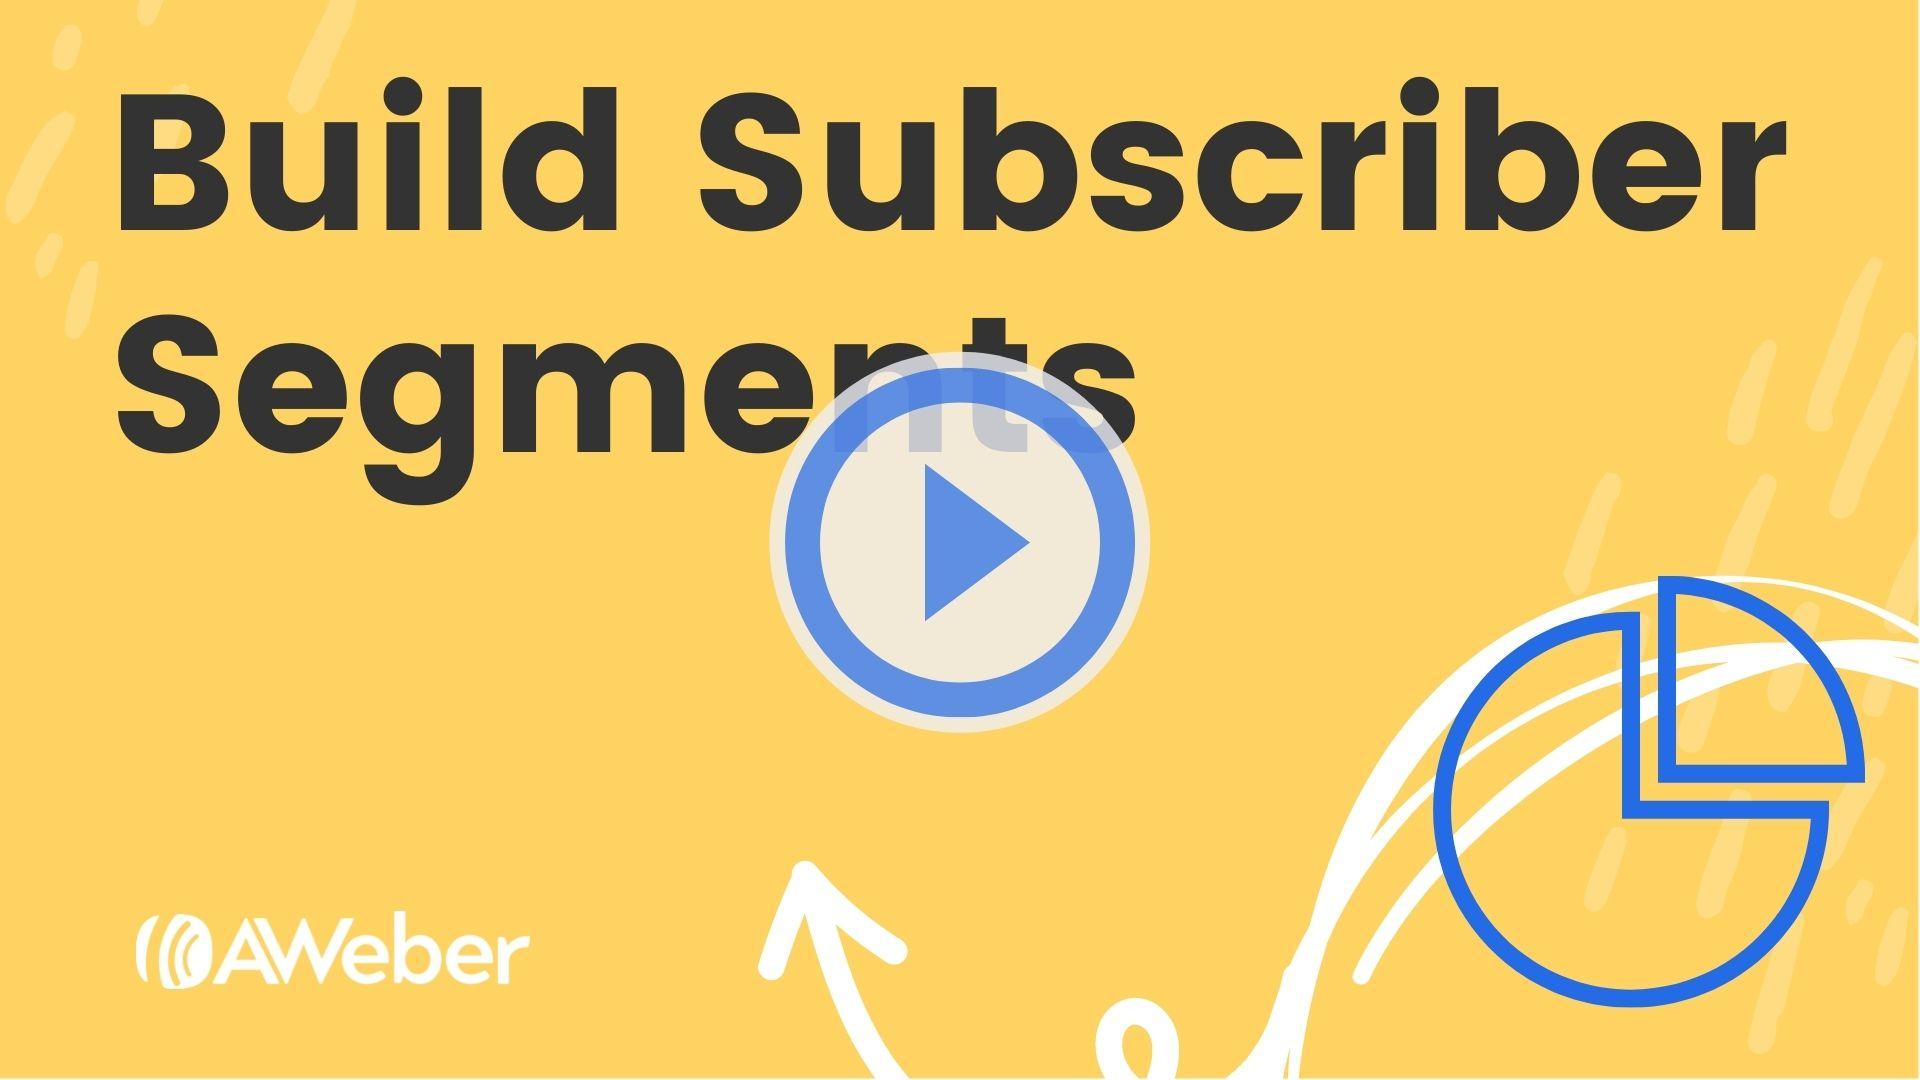 Build Subscriber Segments